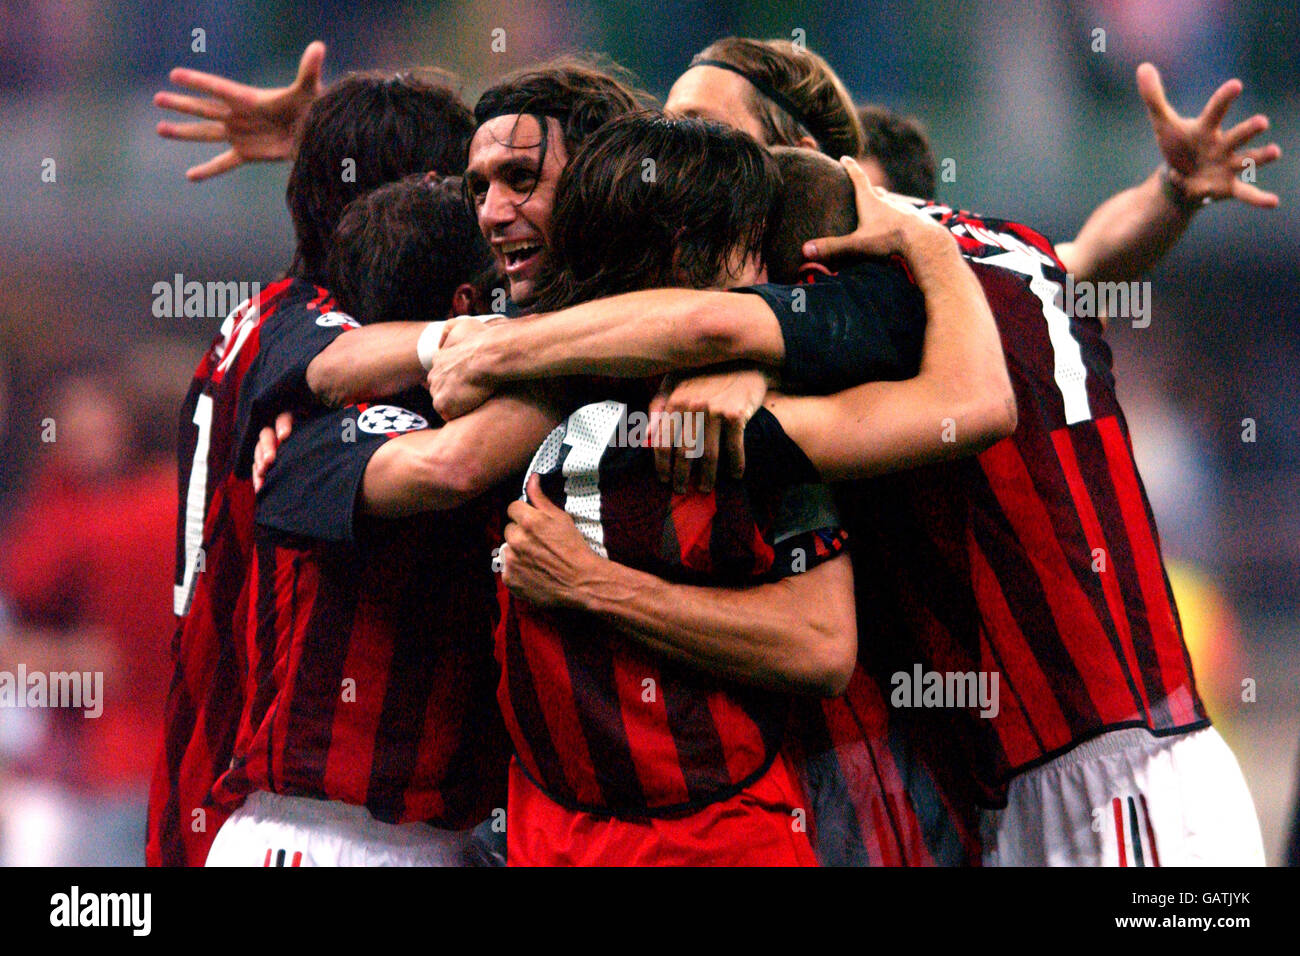 Football - Ligue des champions de l'UEFA - semi finale - deuxième étape - Inter Milan / AC Milan.L'AC Milan célèbre leur victoire pour atteindre la finale de la Ligue des champions de l'UEFA Banque D'Images